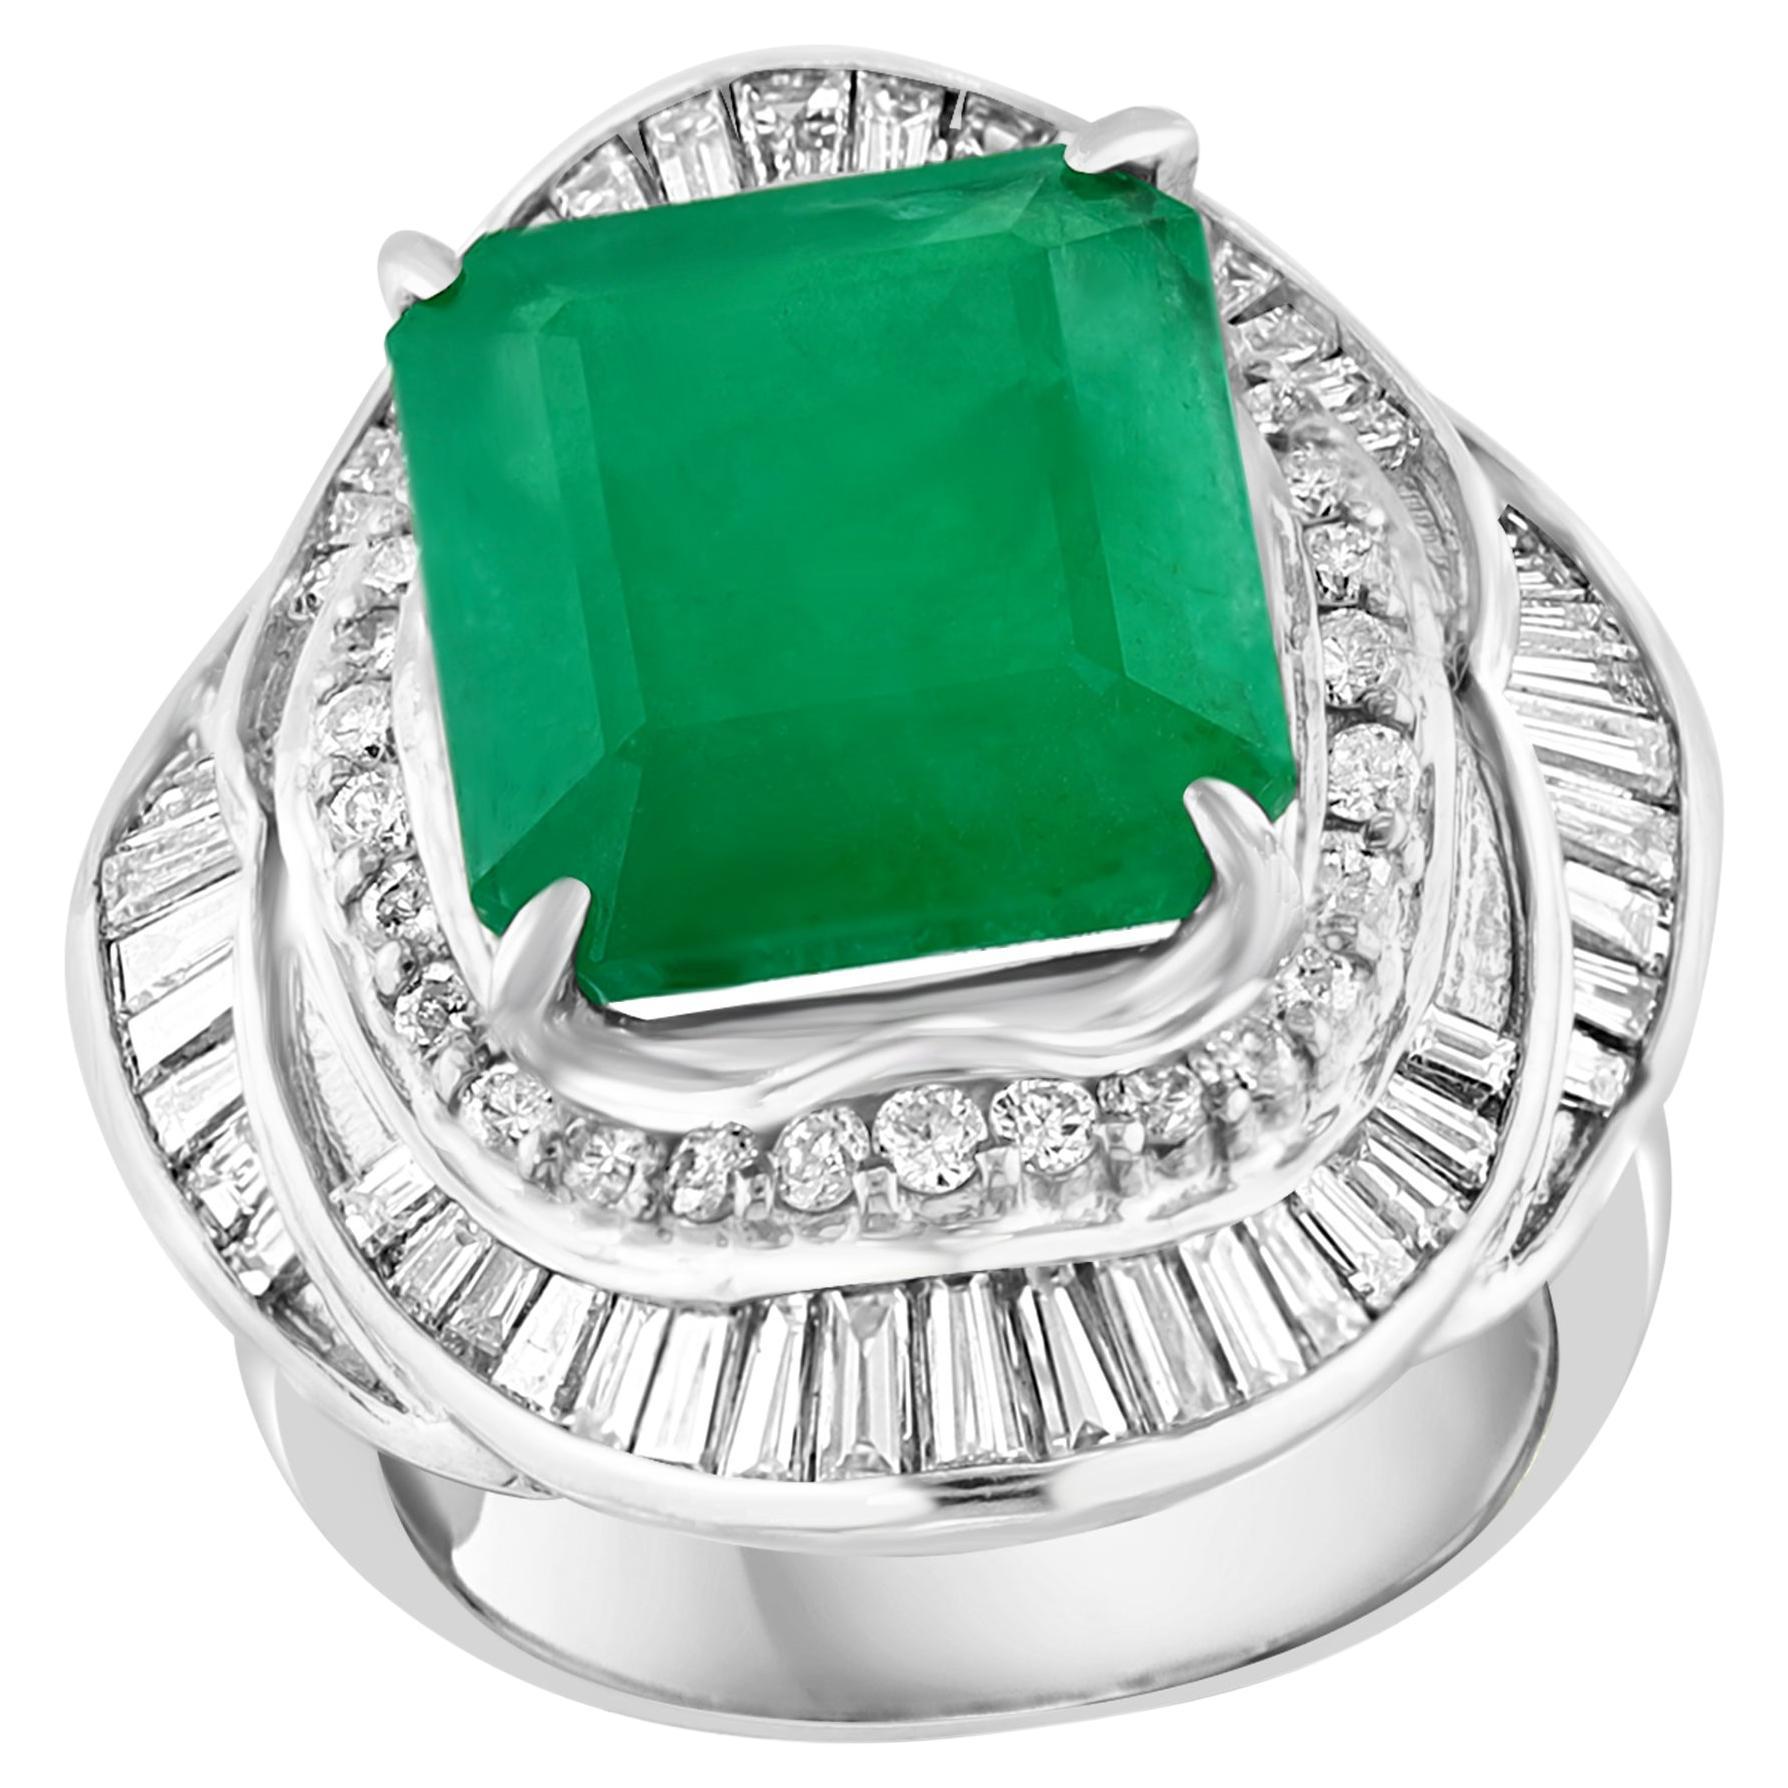 Natural 8 Carat Emerald Cut Zambian Emerald & Diamond Ring in Platinum, Estate For Sale